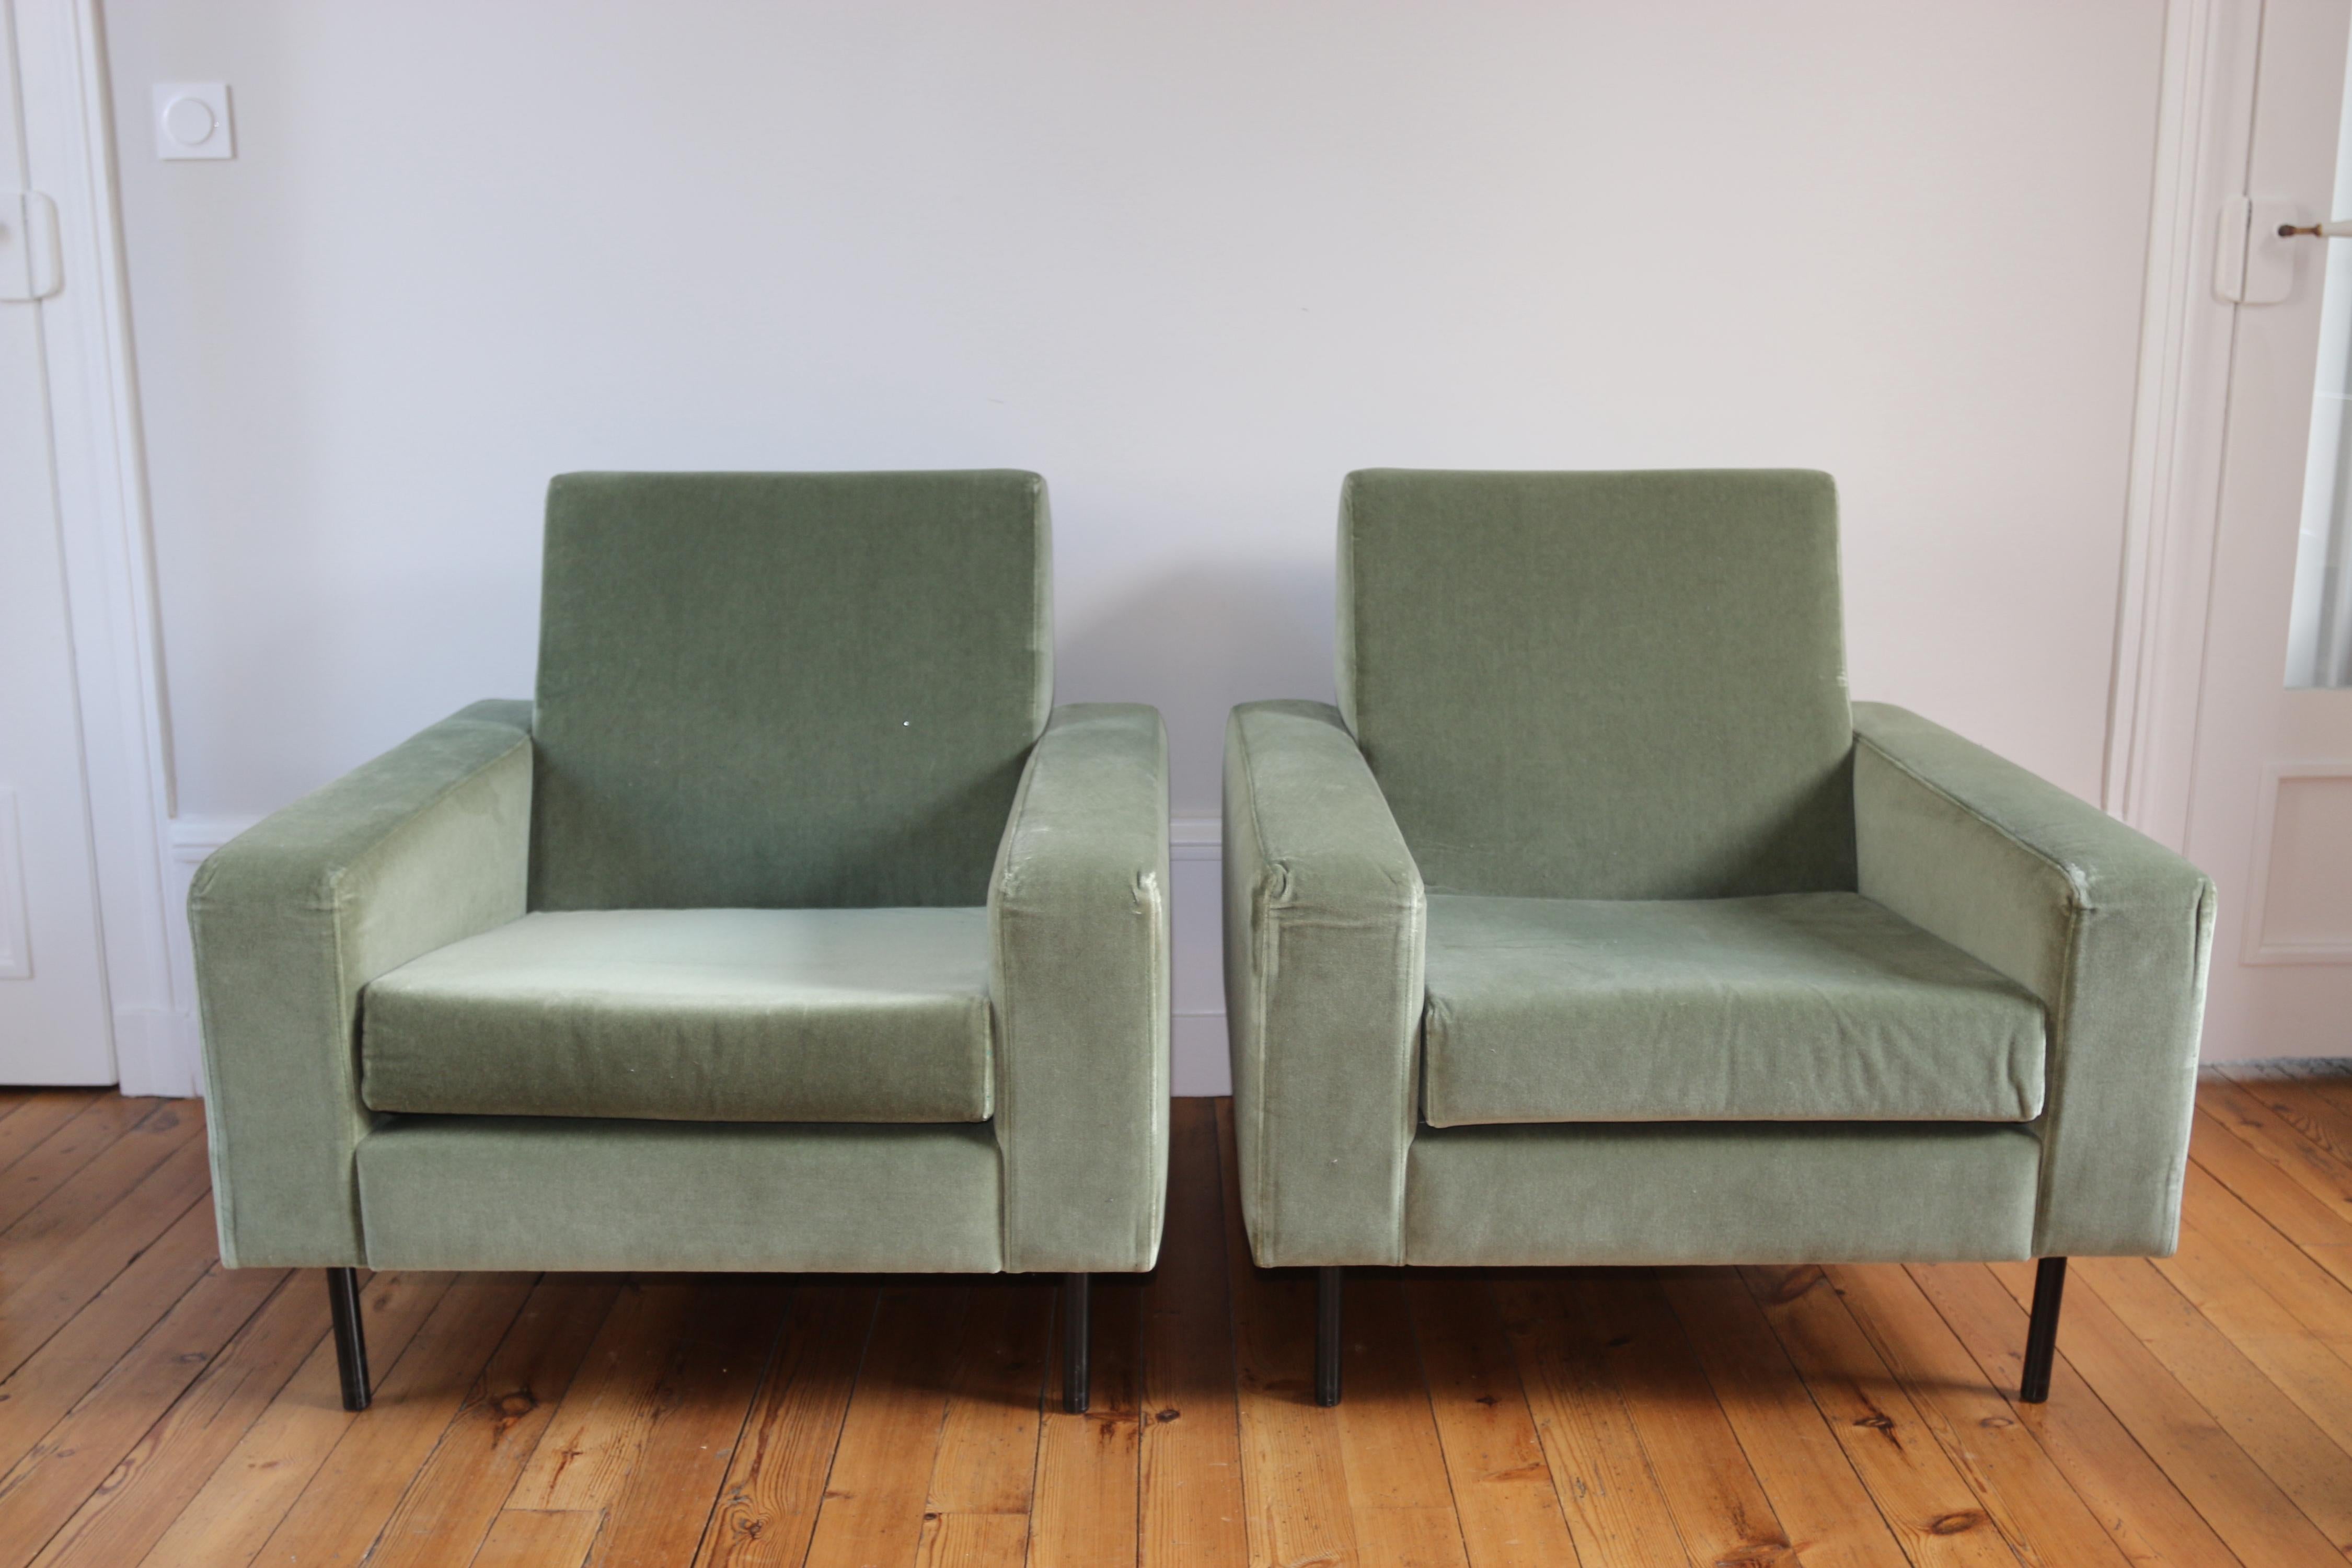 Paire de fauteuils moderniste dans l'esprit des fauteuils Guariche
vraisemblablement dessinés par Paolizzi pour les éditions Zol

vente à l'unité possible

en velours vert amande
très bon état (refait récemment), les coins des accoudoirs sont